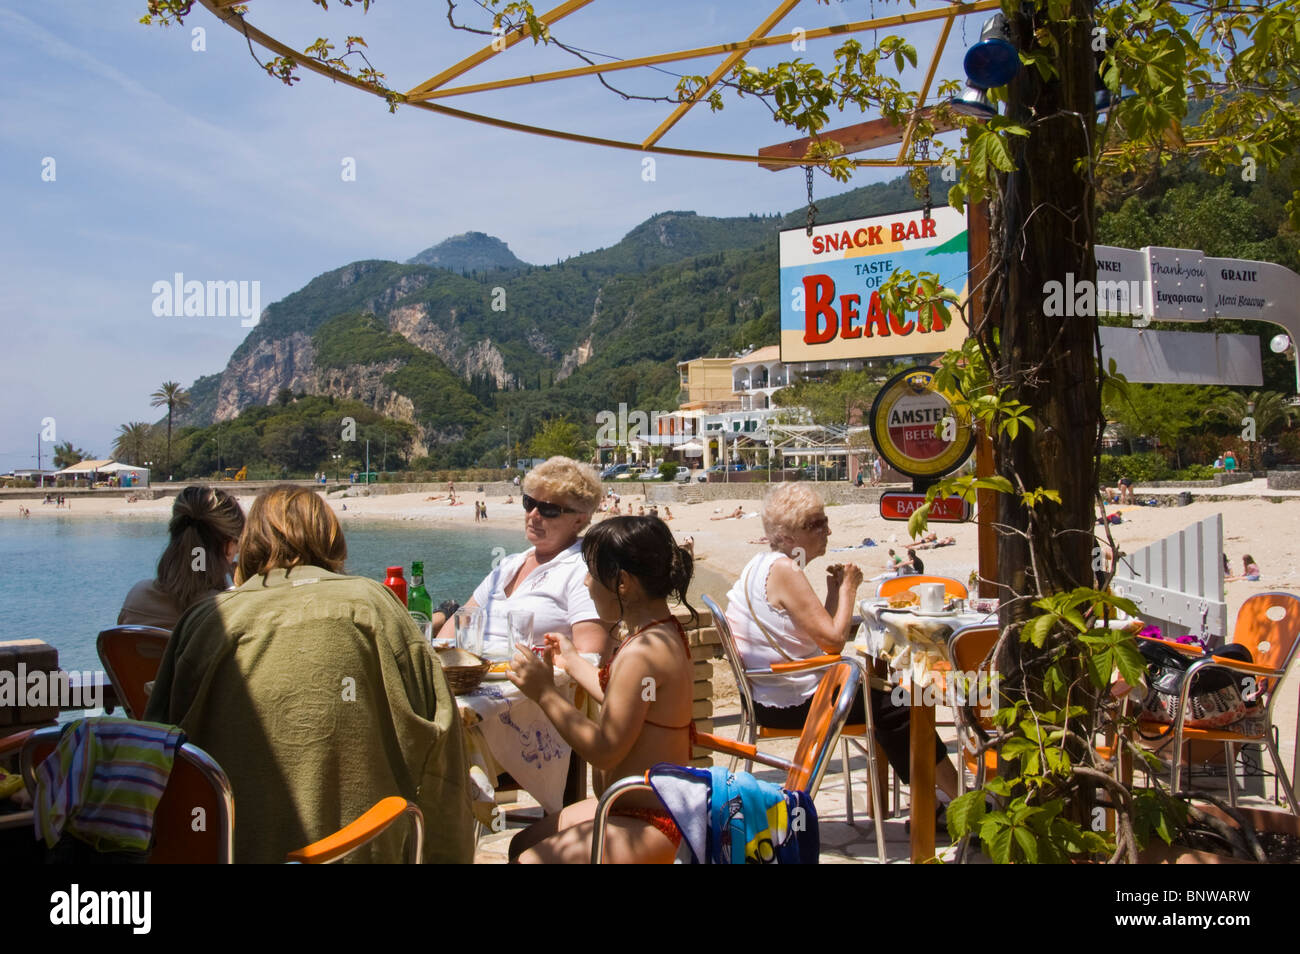 Turisti che si godono il pranzo in spiaggia snack bar a Paleokastritsa sull'isola greca di Corfu Grecia GR Foto Stock